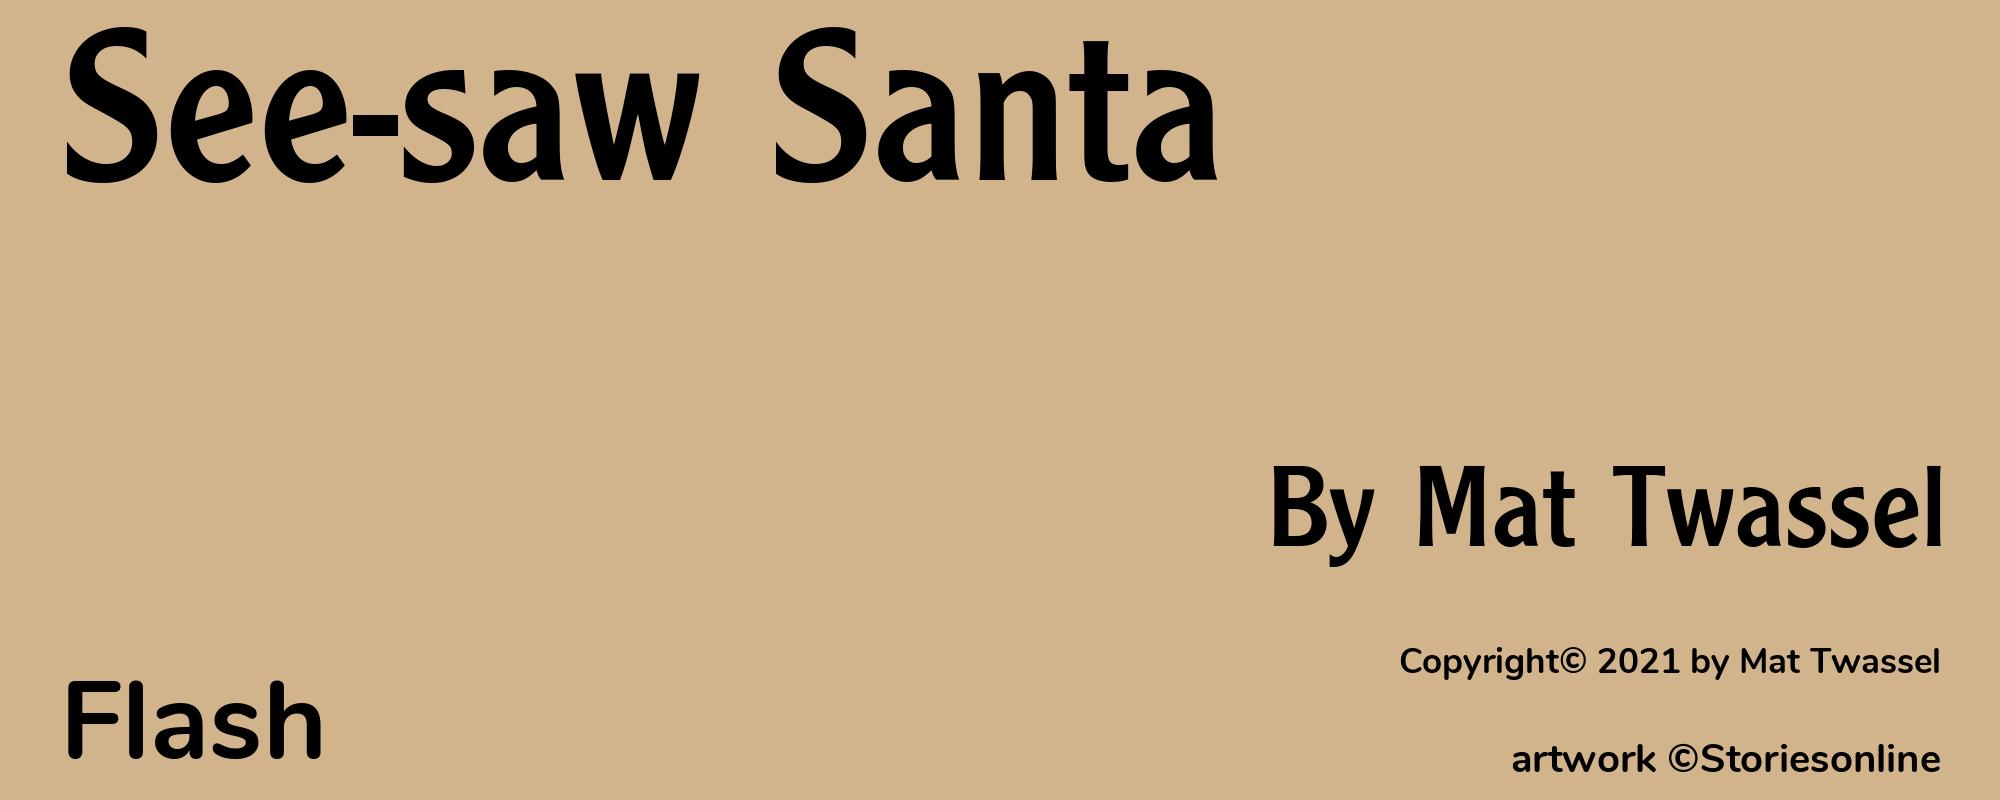 See-saw Santa - Cover